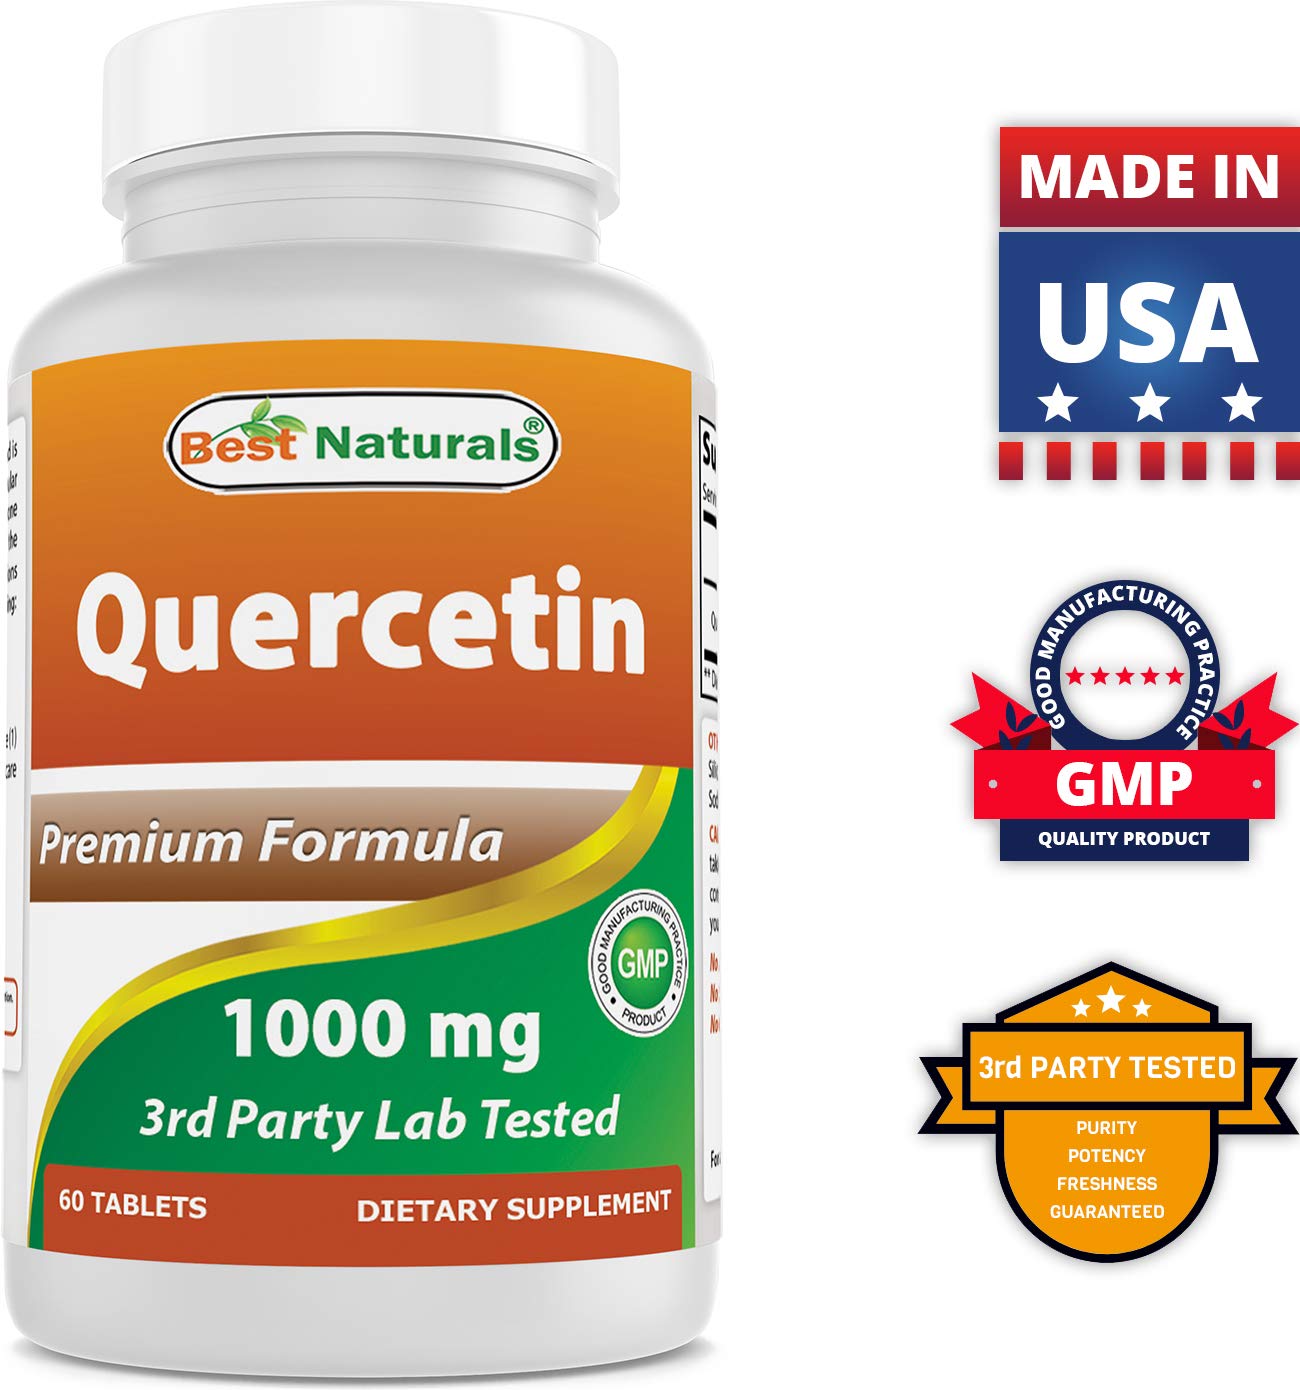 Best Naturals Bromelain 500 mg & Quercetin 1000 mg